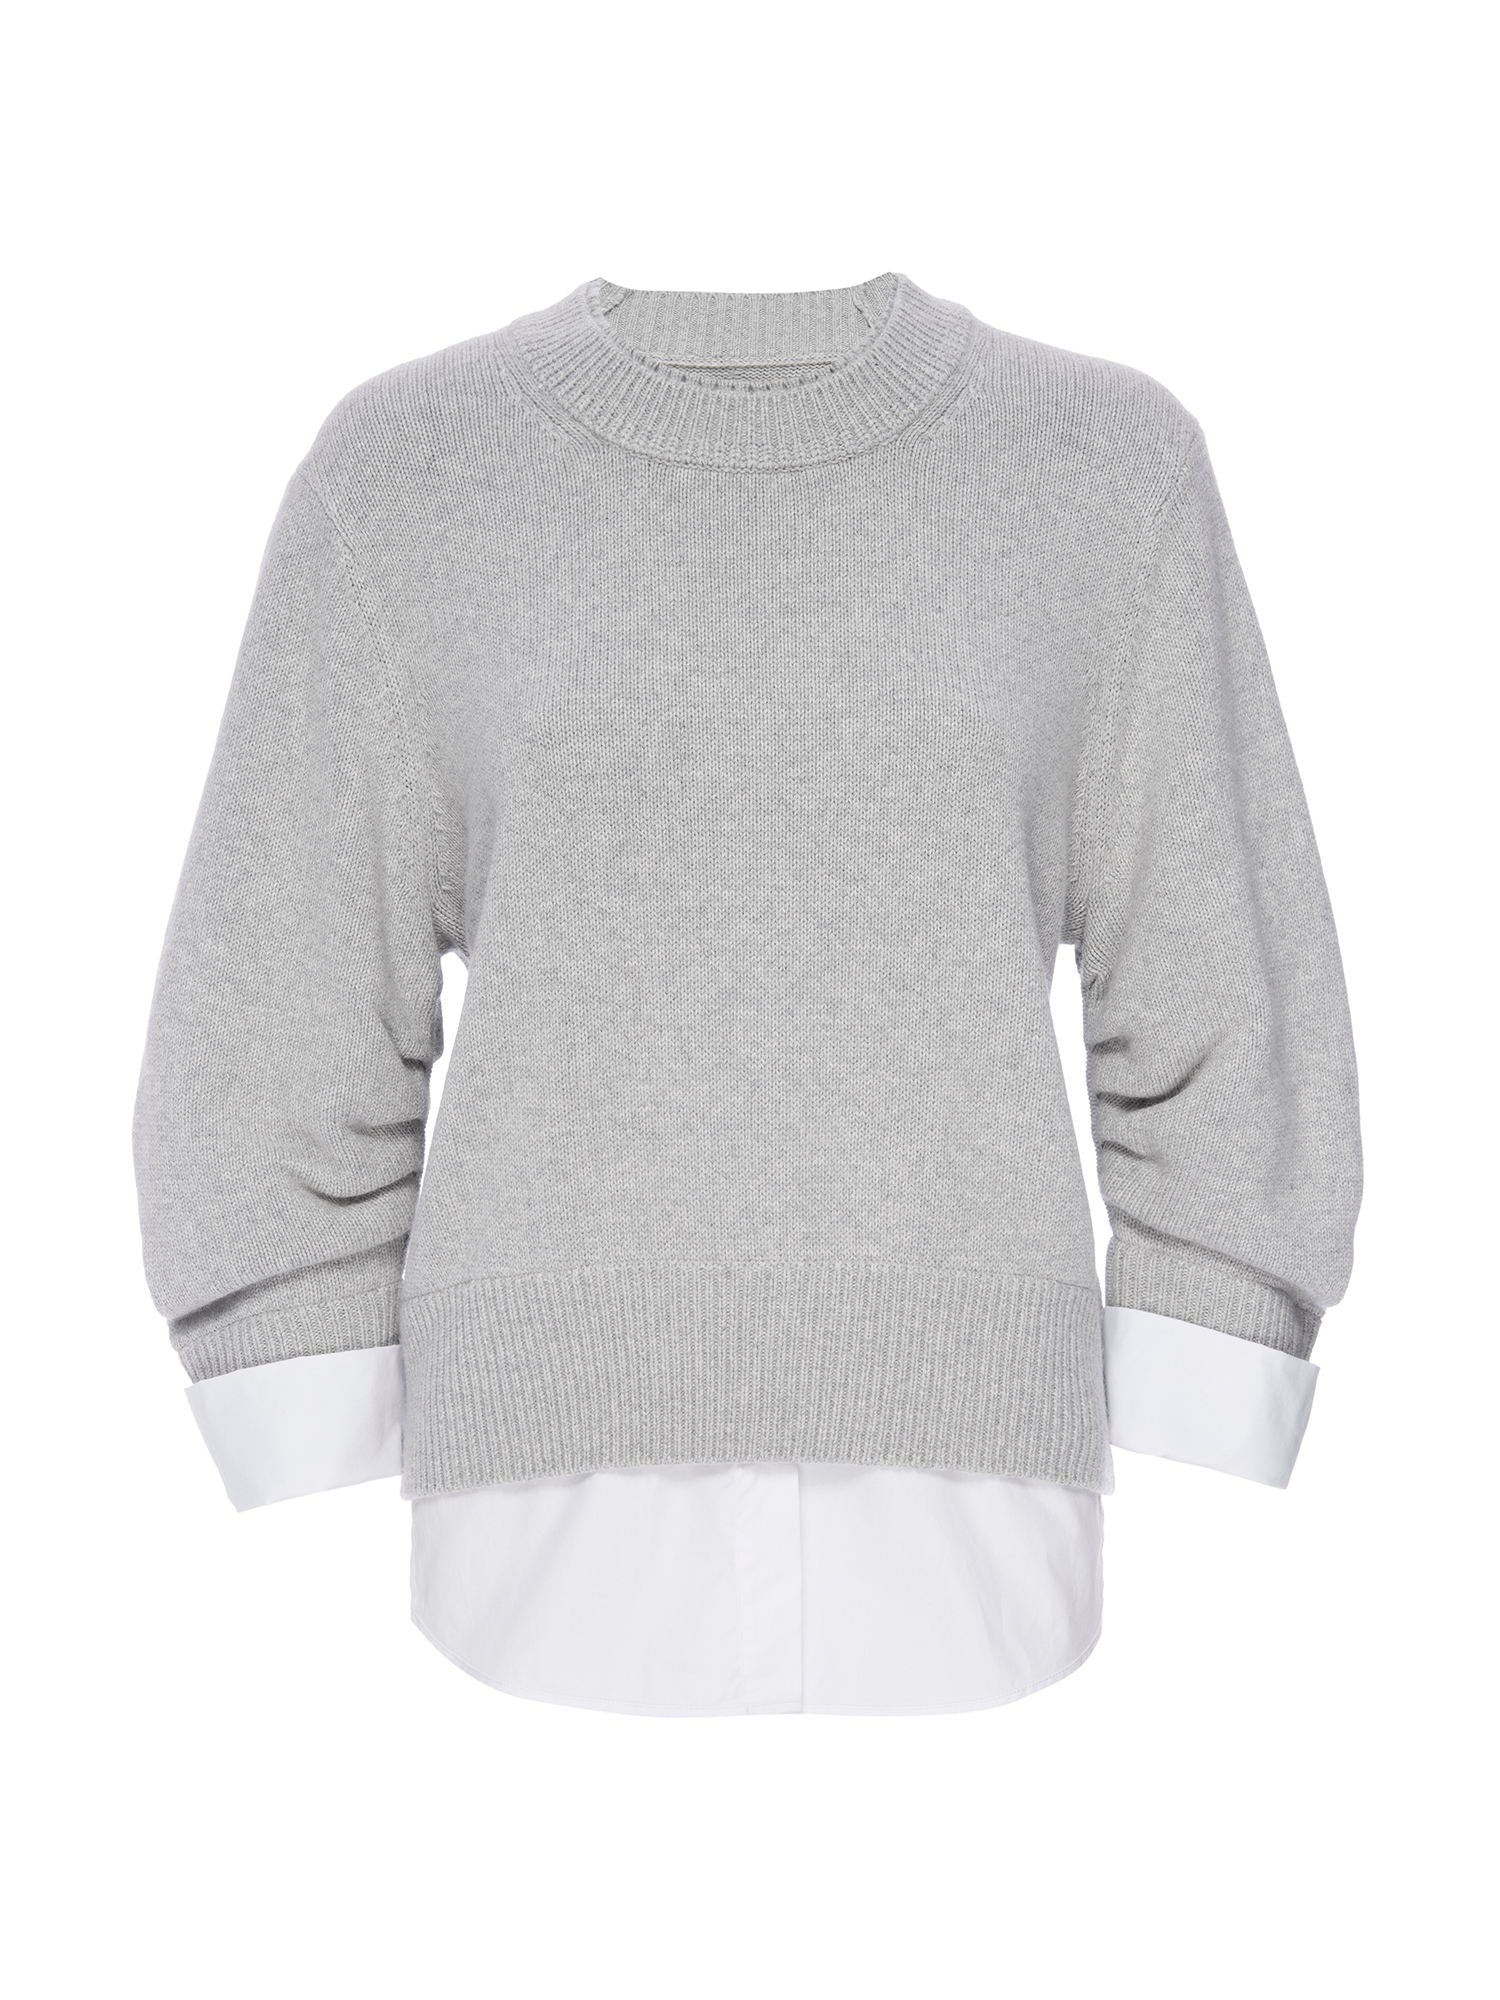 Raya grey ruched layered crewneck sweater flat view